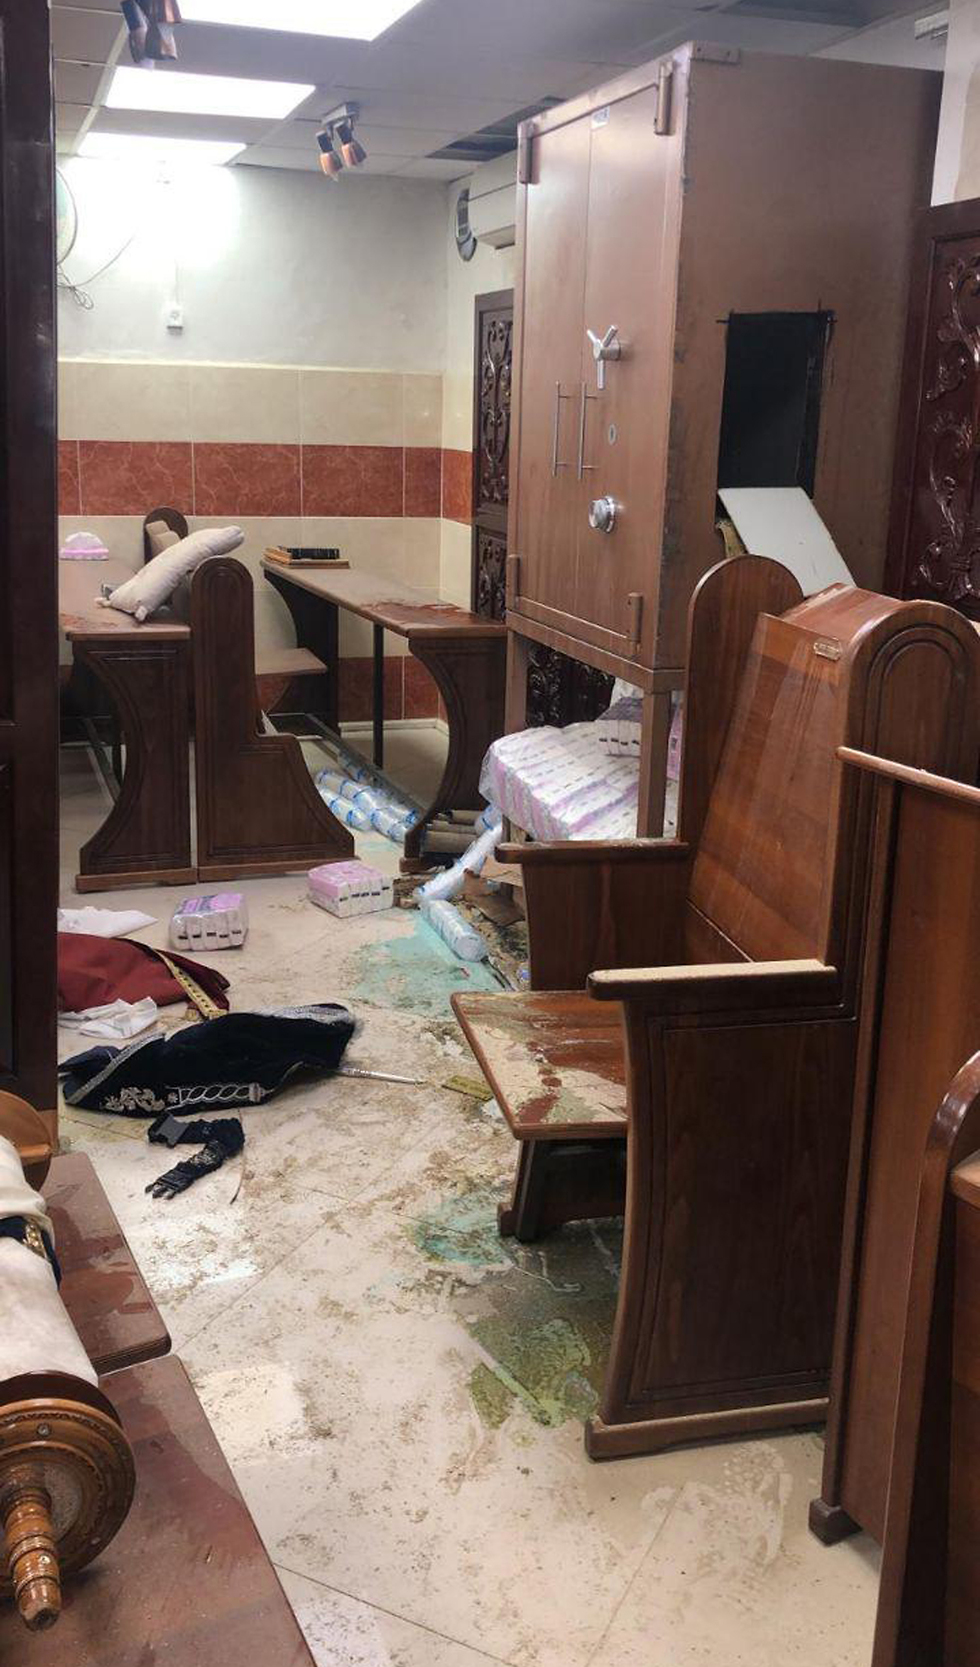 הנזק בבית הכנסת לאחר הפריצה (צילום: דוברות המשטרה)